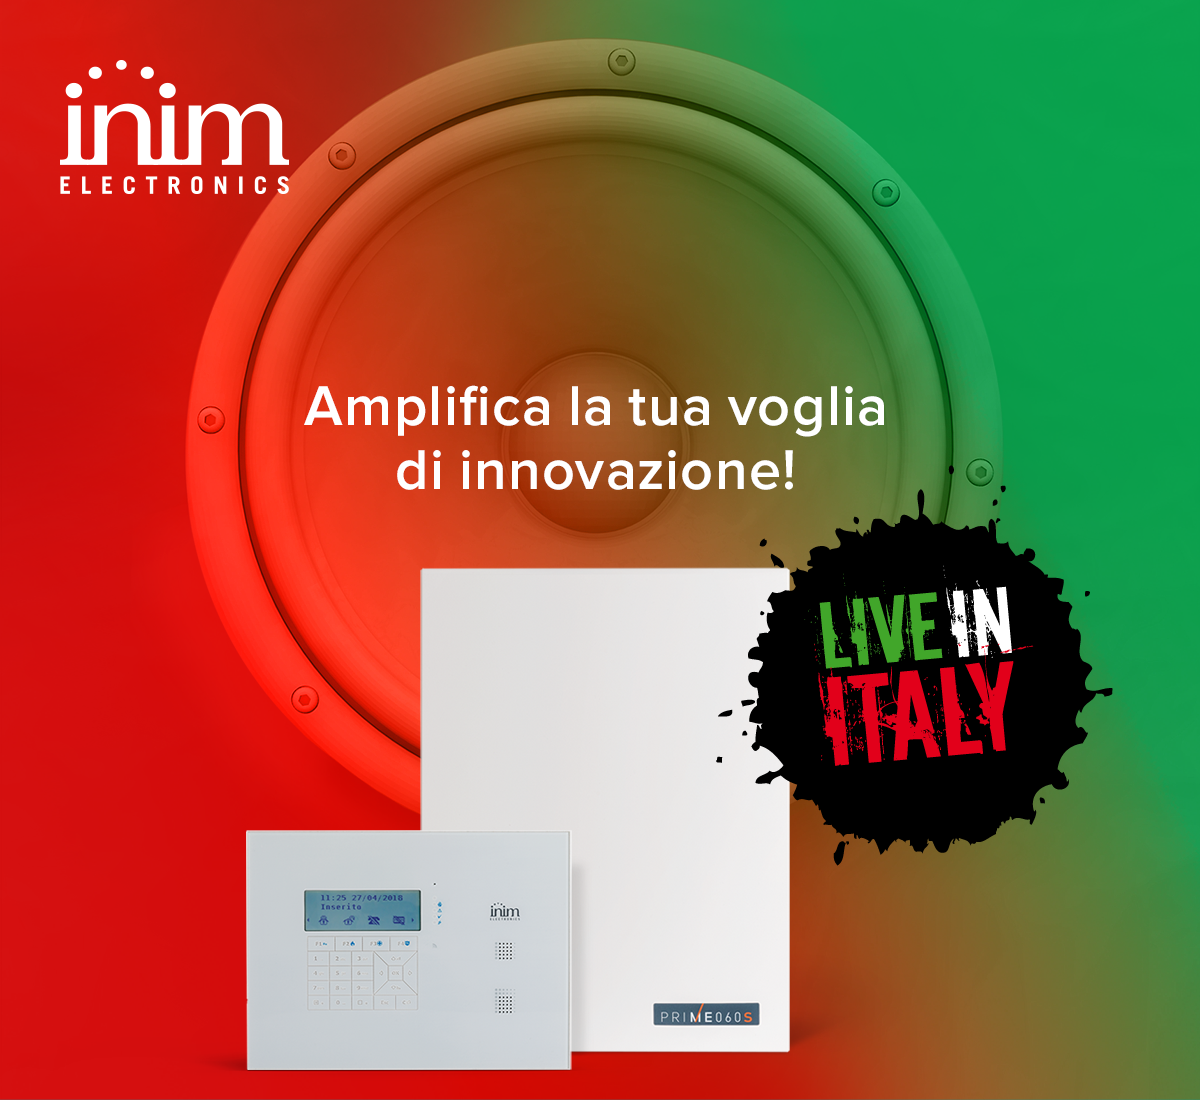  Arriva Live in Italy 2019: il meeting tecnico/commerciale di Inim in collaborazione con Strano, distributore Inim in Sicilia